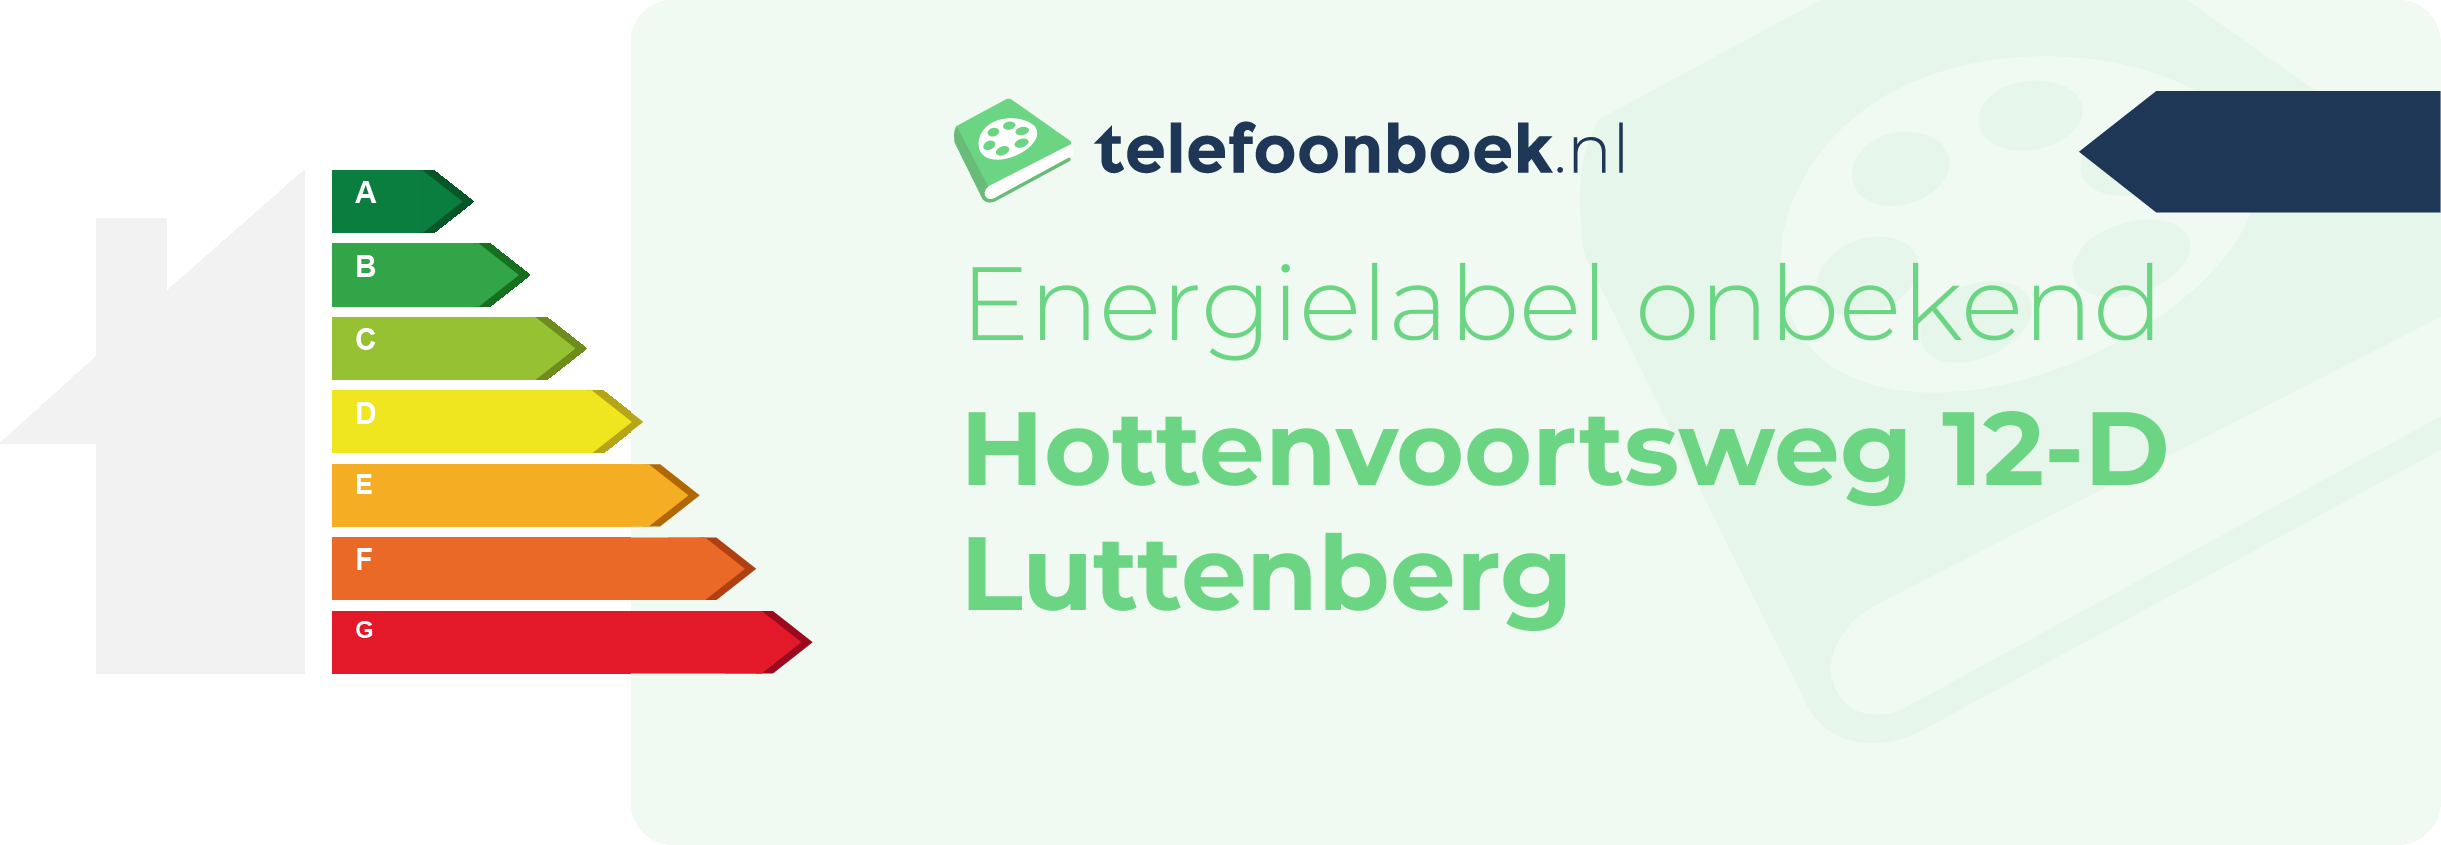 Energielabel Hottenvoortsweg 12-D Luttenberg